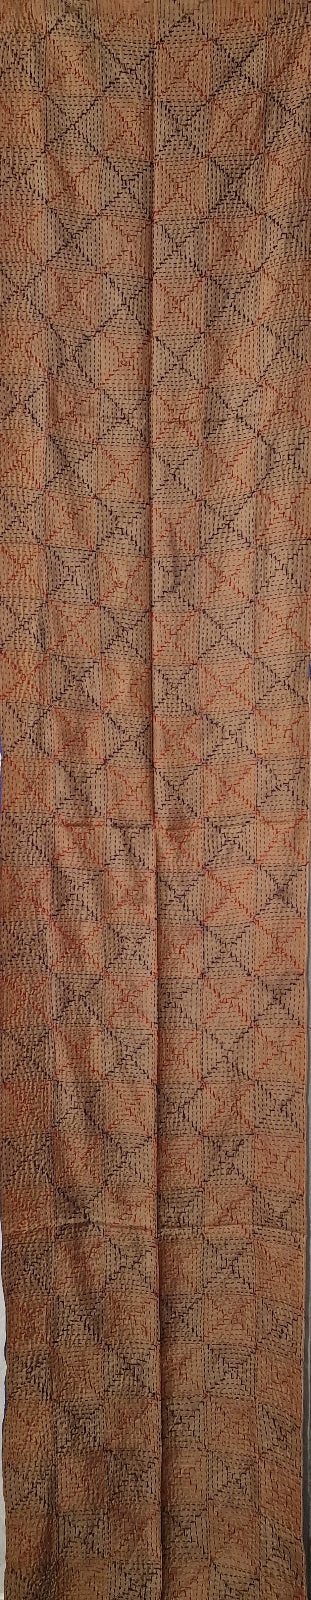 Tosidig "blek hudfarge" og lilla silkeskjerf med håndbrodert mønster (43)